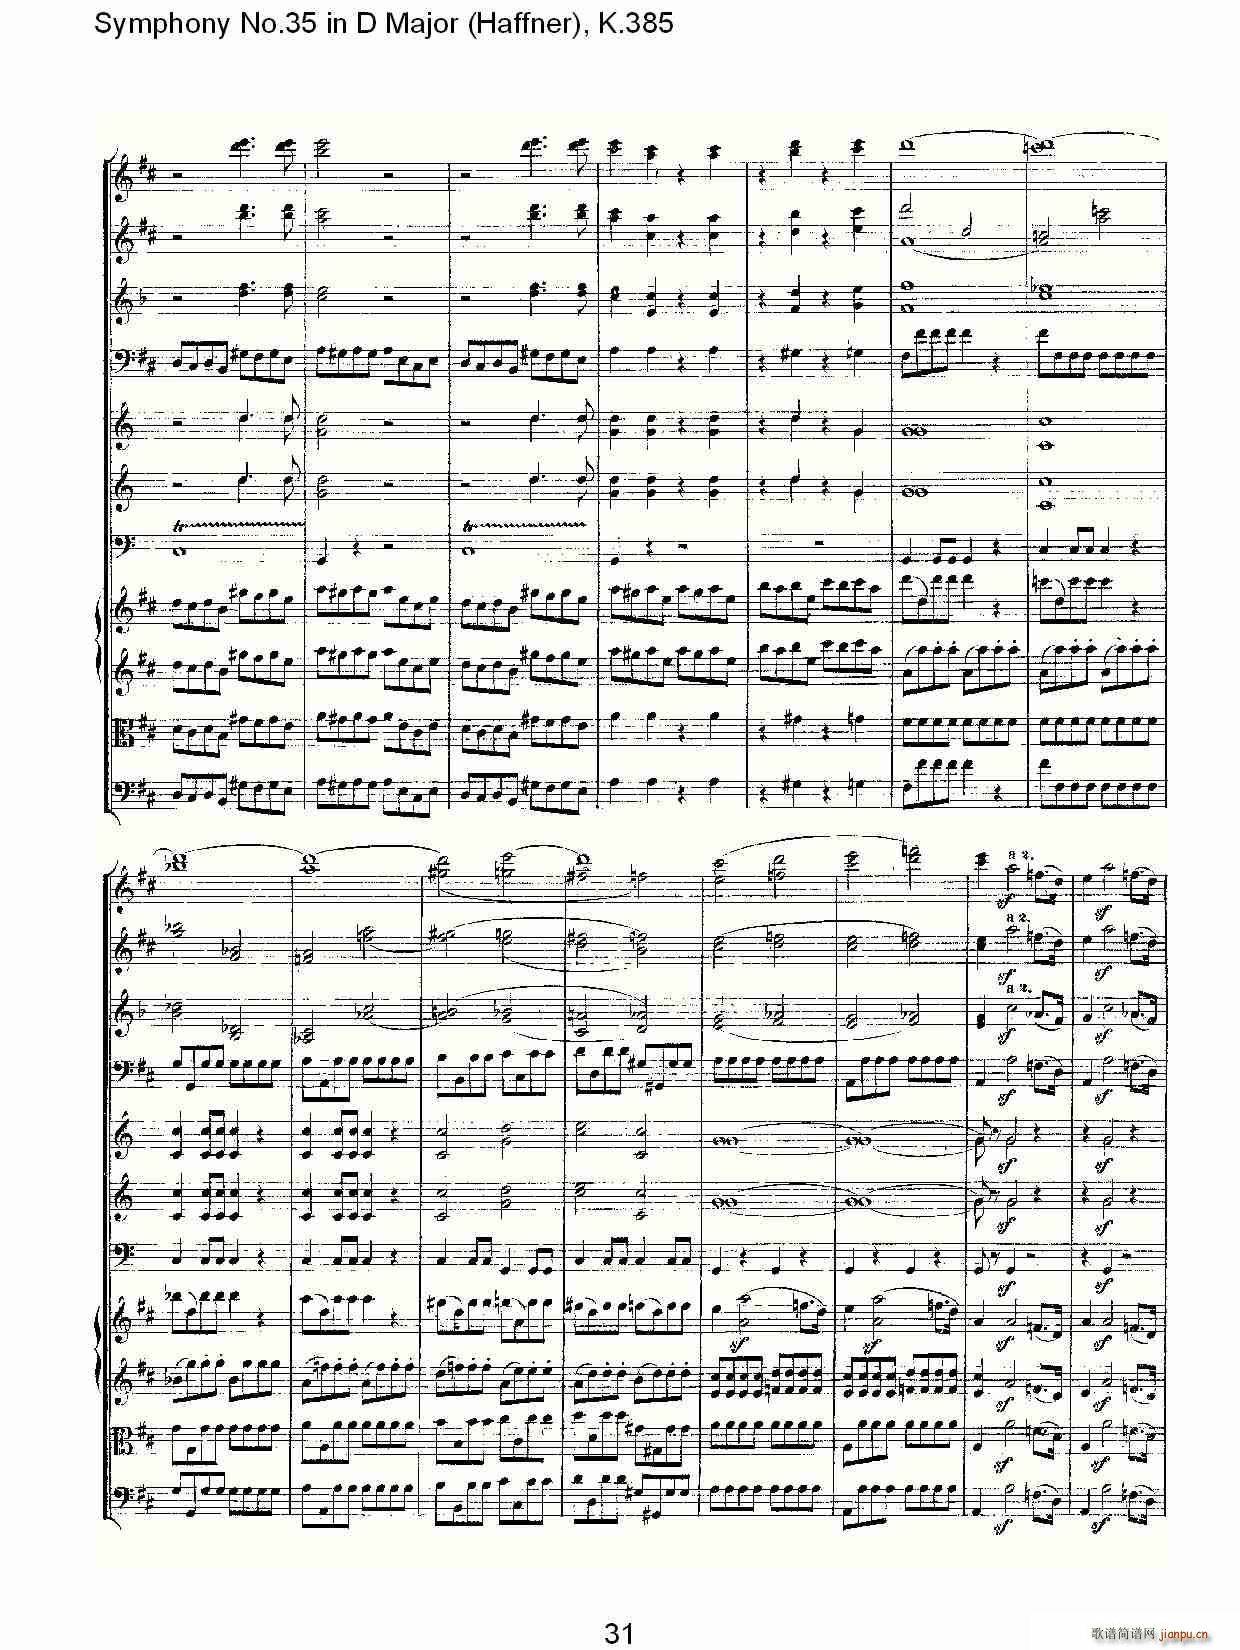 Symphony No.35 in D Major, K.385(ʮּ)31